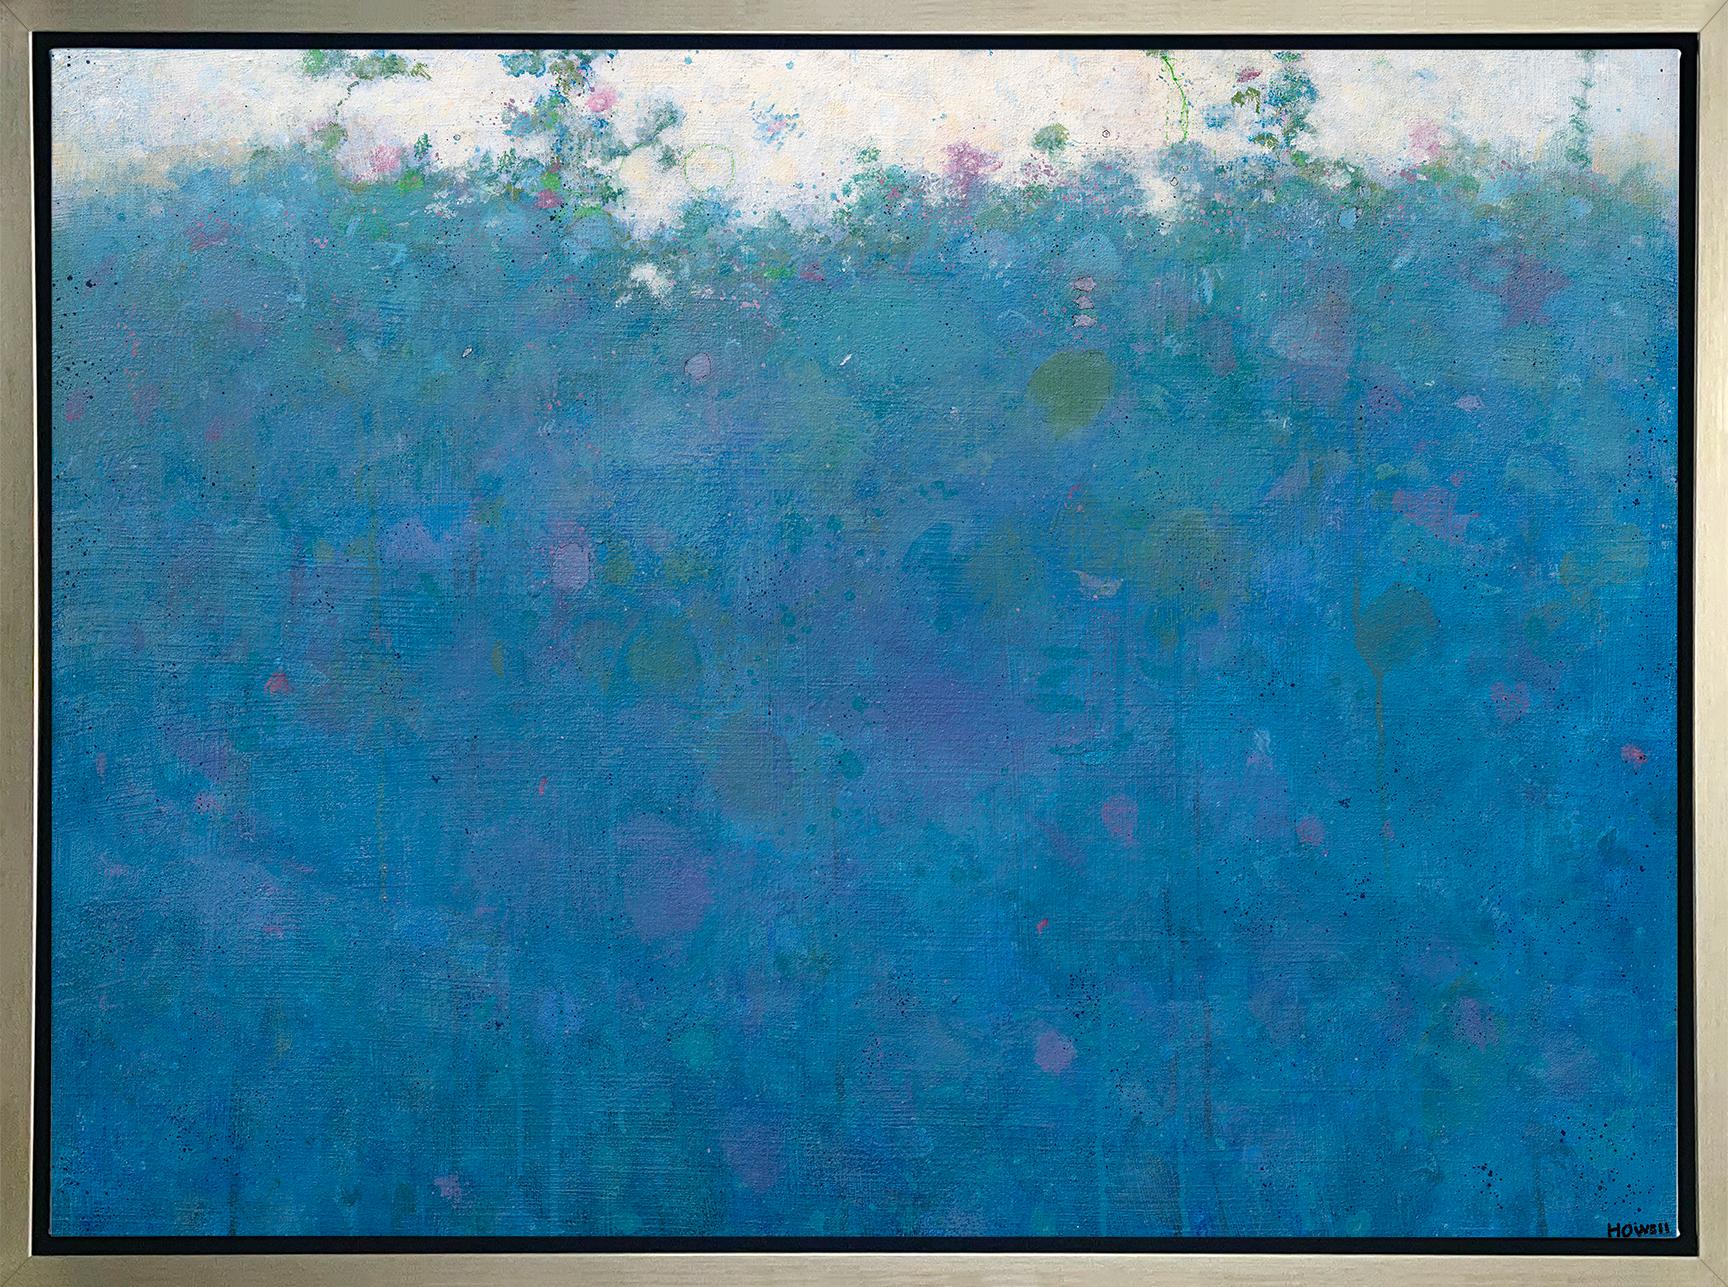 Landscape Print Elwood Howell - « Blue Magic », imprimé giclée encadré en édition limitée, 91 x 122 cm